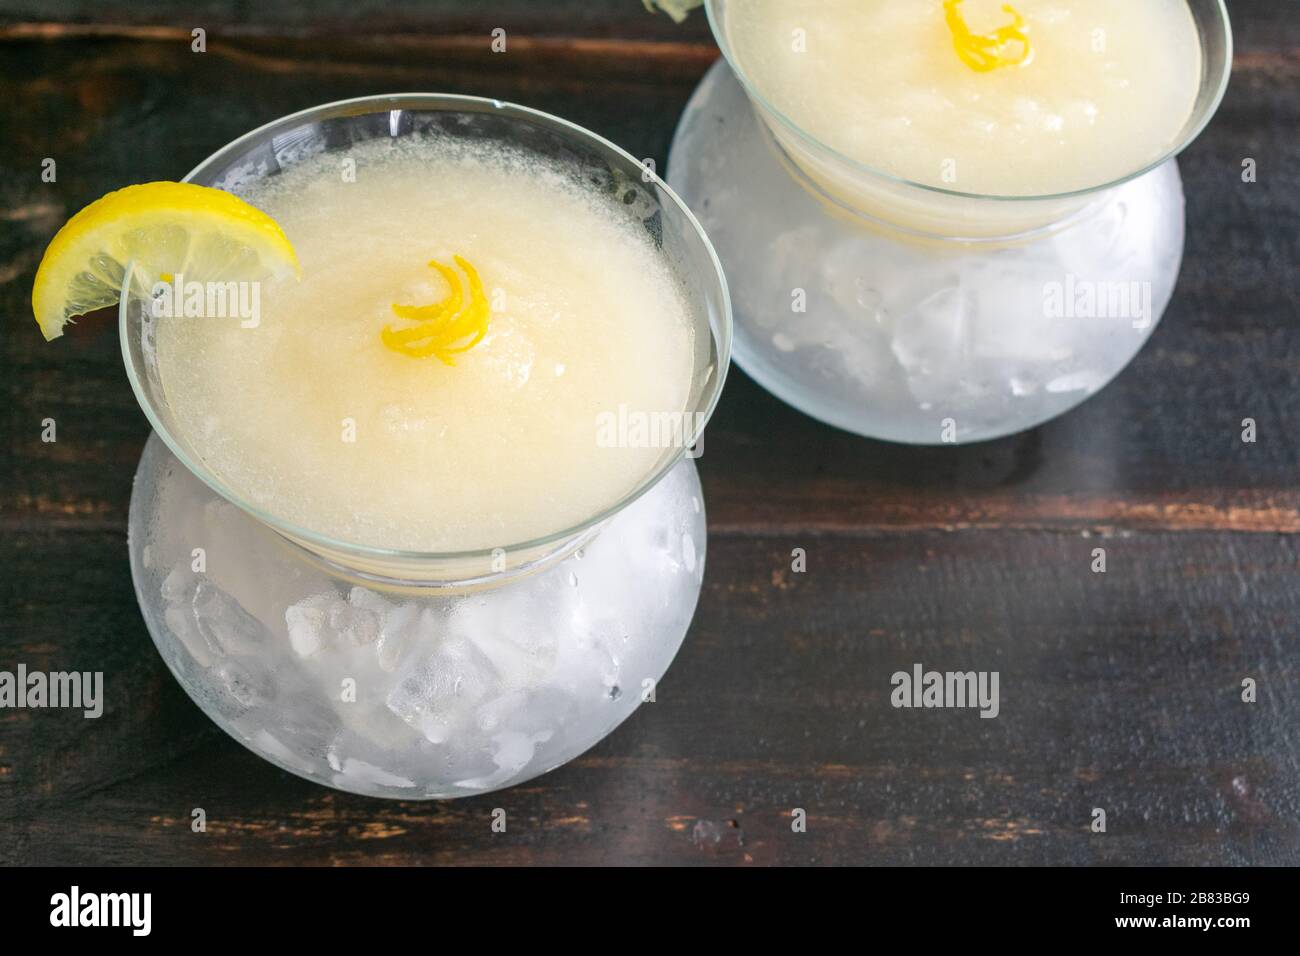 Sgroppino al Limone : un cocktail congelé composé de sorbetto de citron, de prosecco et de vodka Banque D'Images